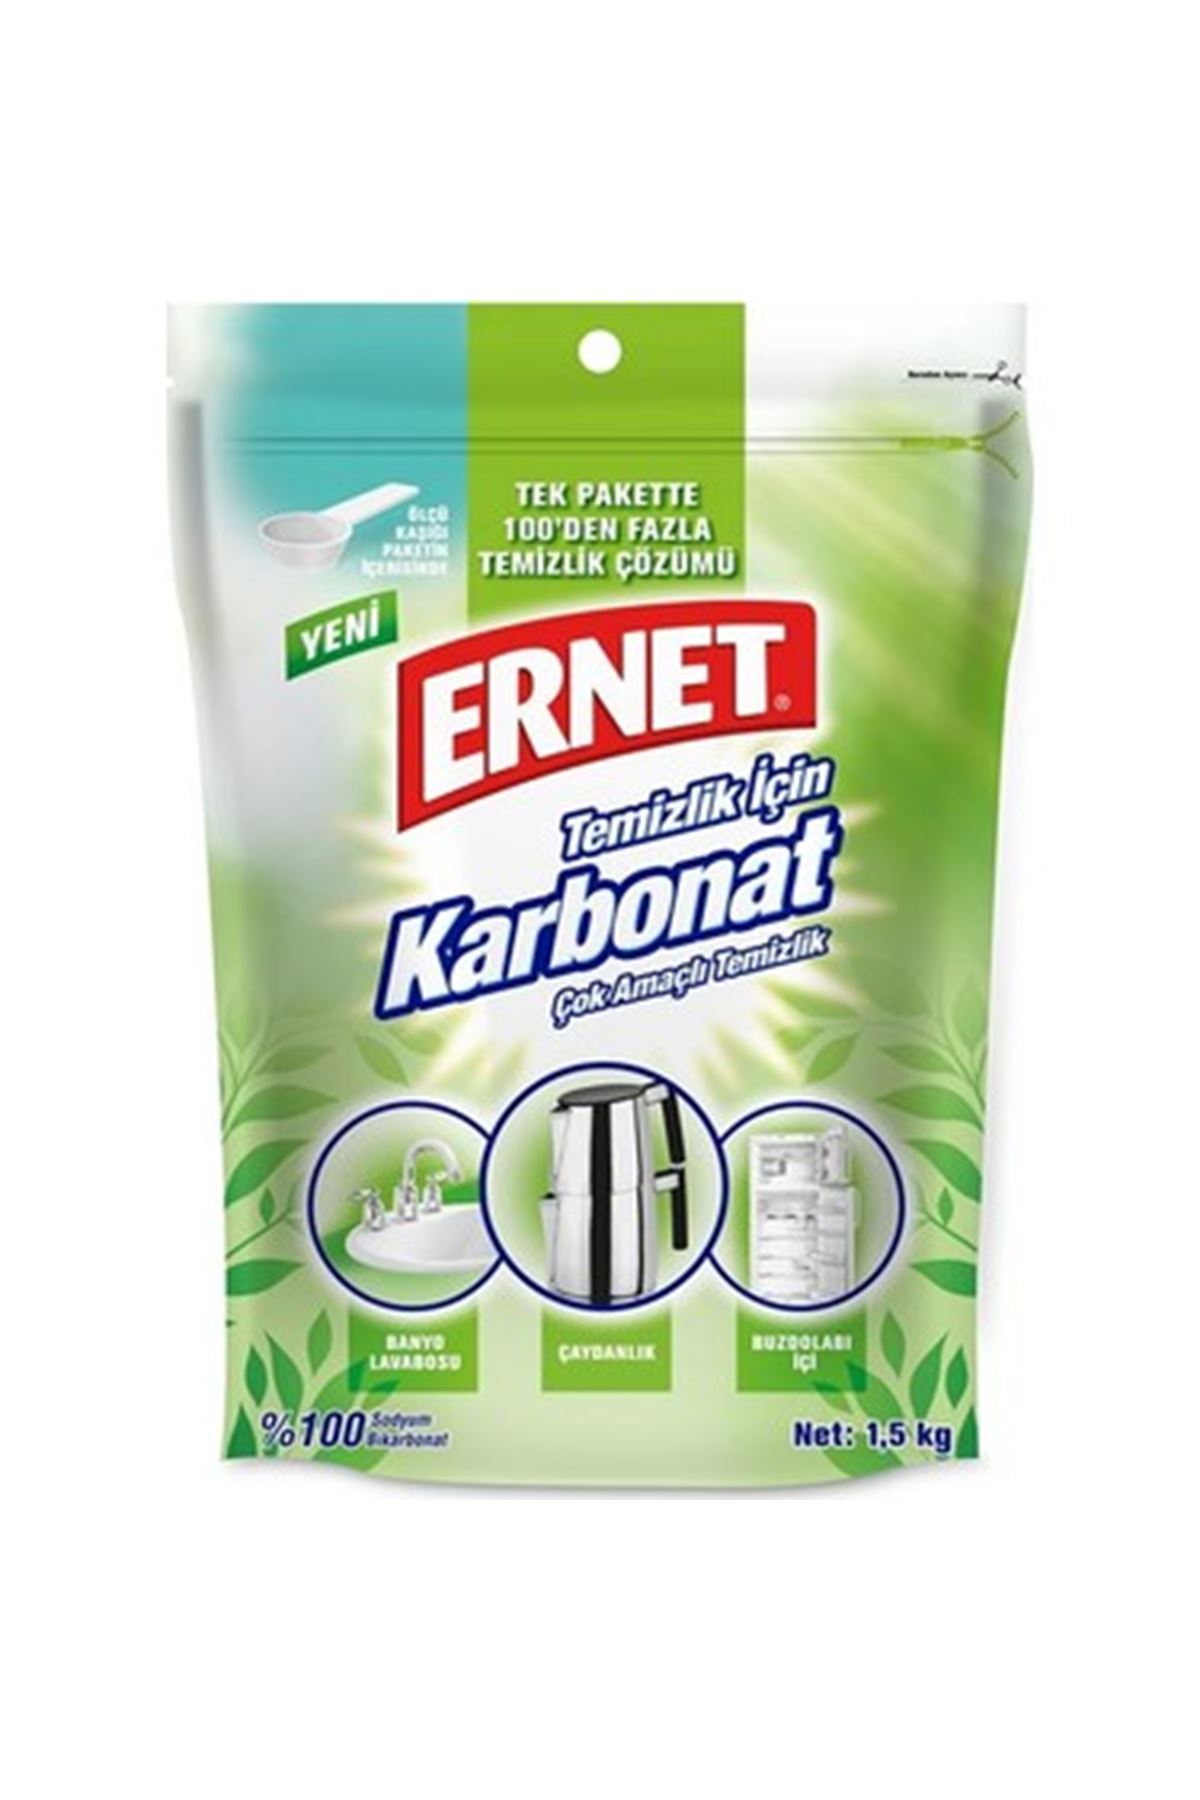 Ernet Temizlik için Karbonat 1,5 KG